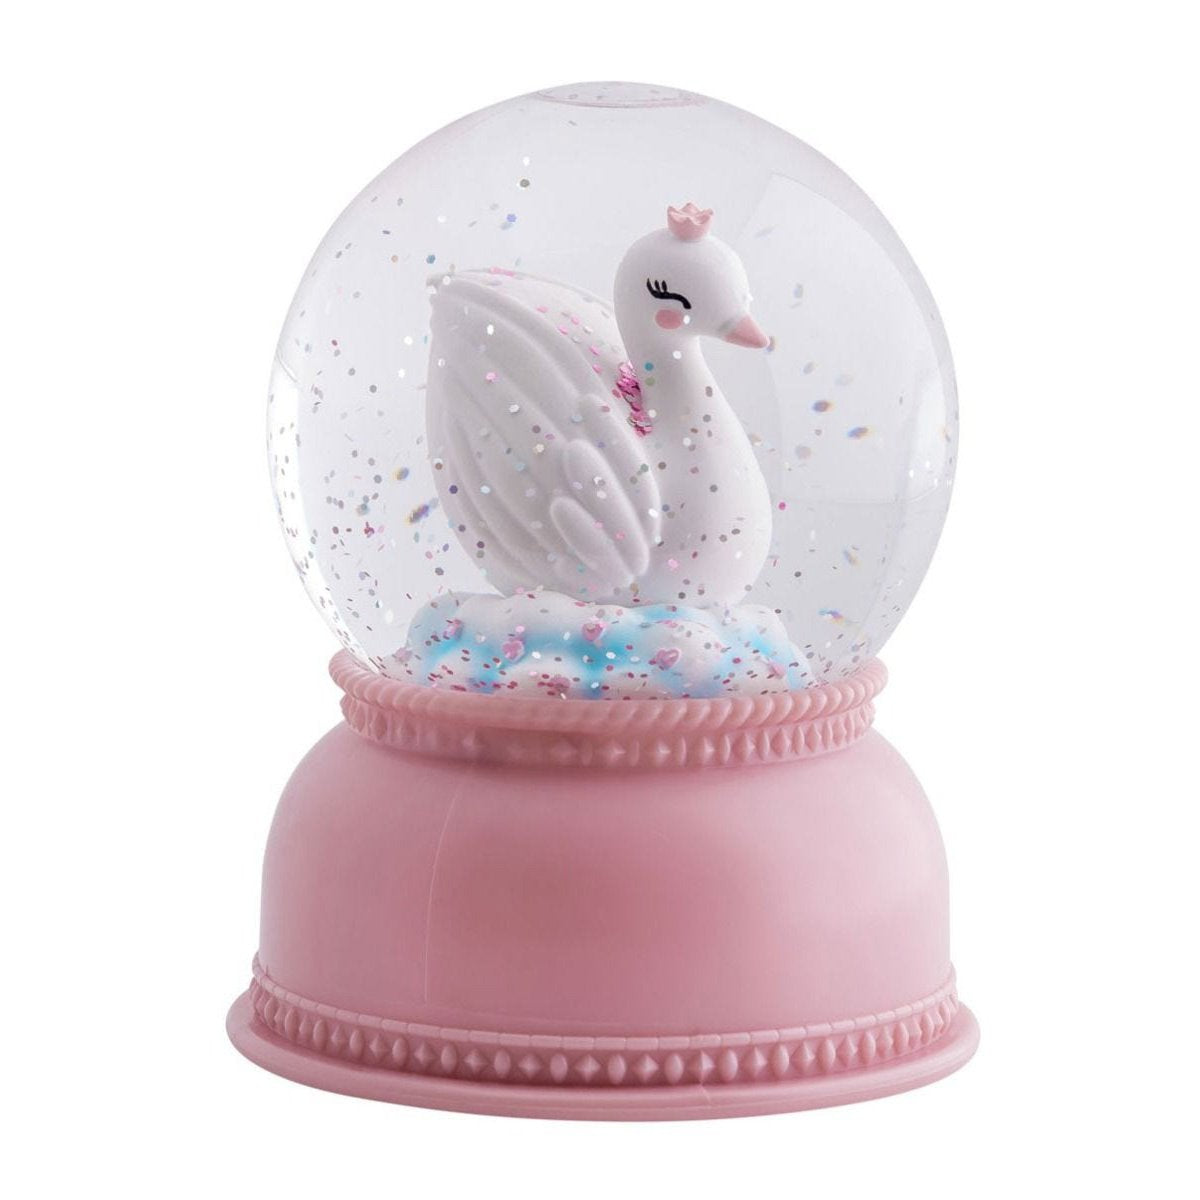 a-little-lovely-company-snowglobe-light-swan- (1)